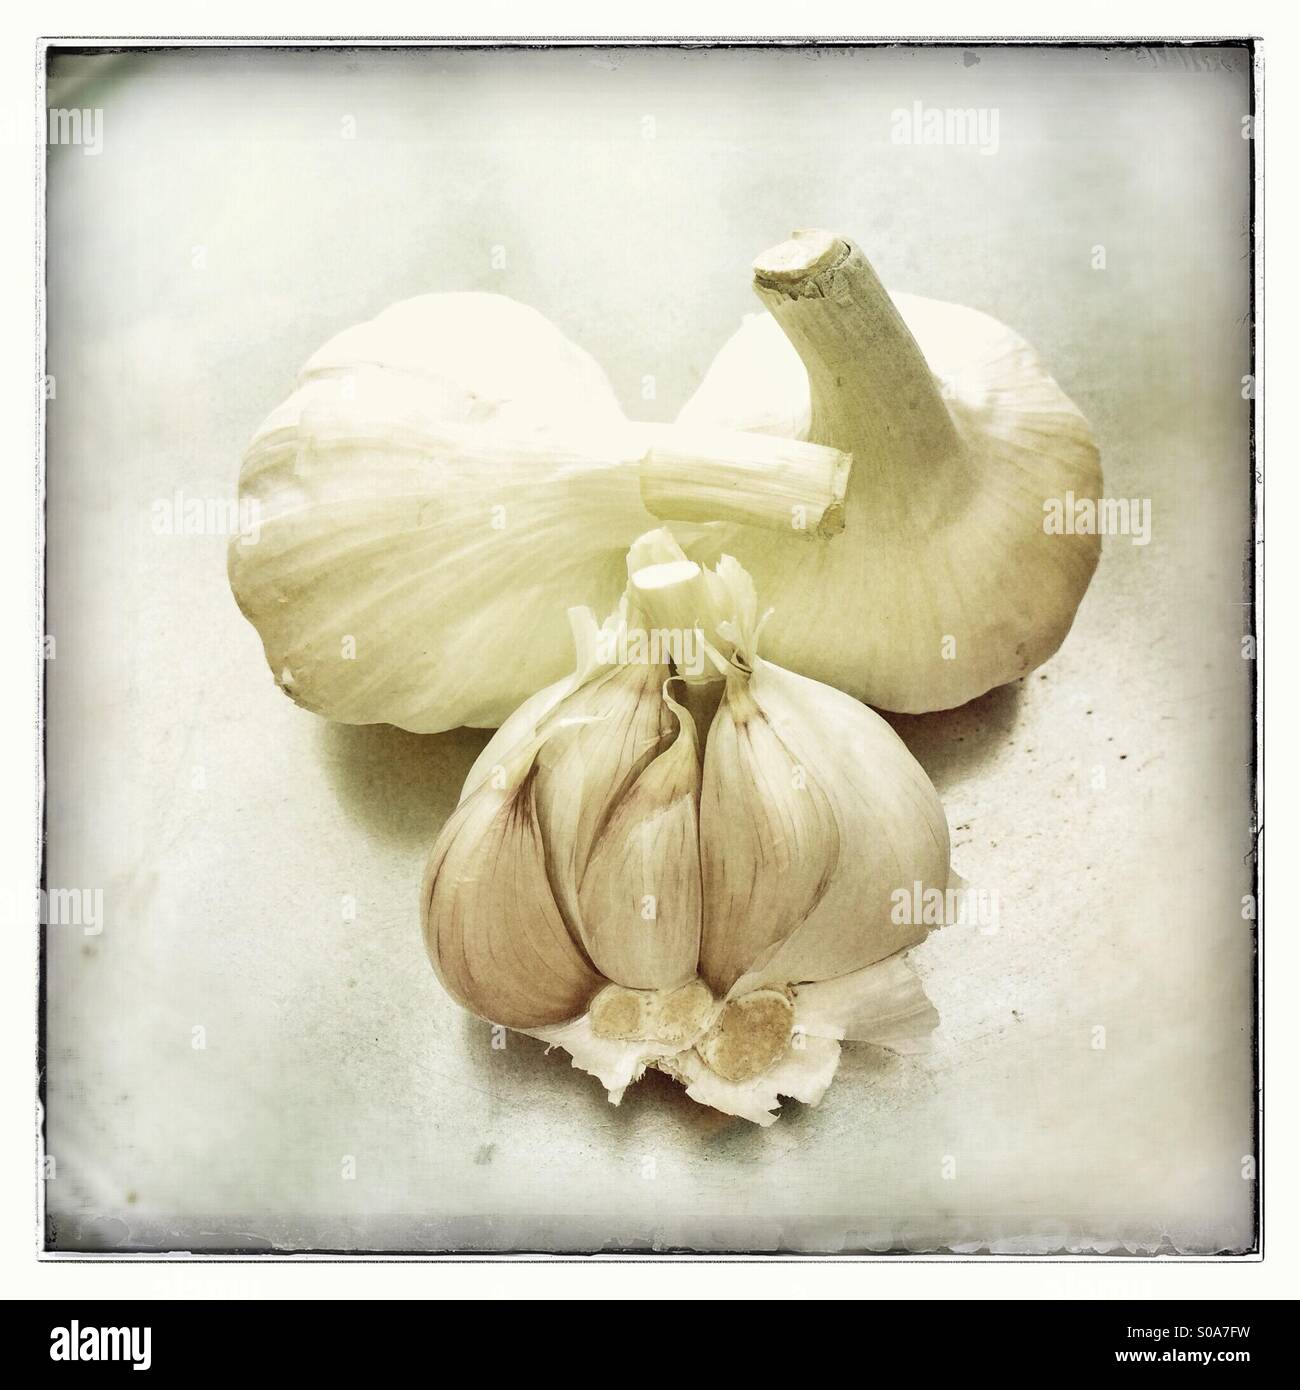 Bulbi di aglio e chiodi di garofano Foto Stock